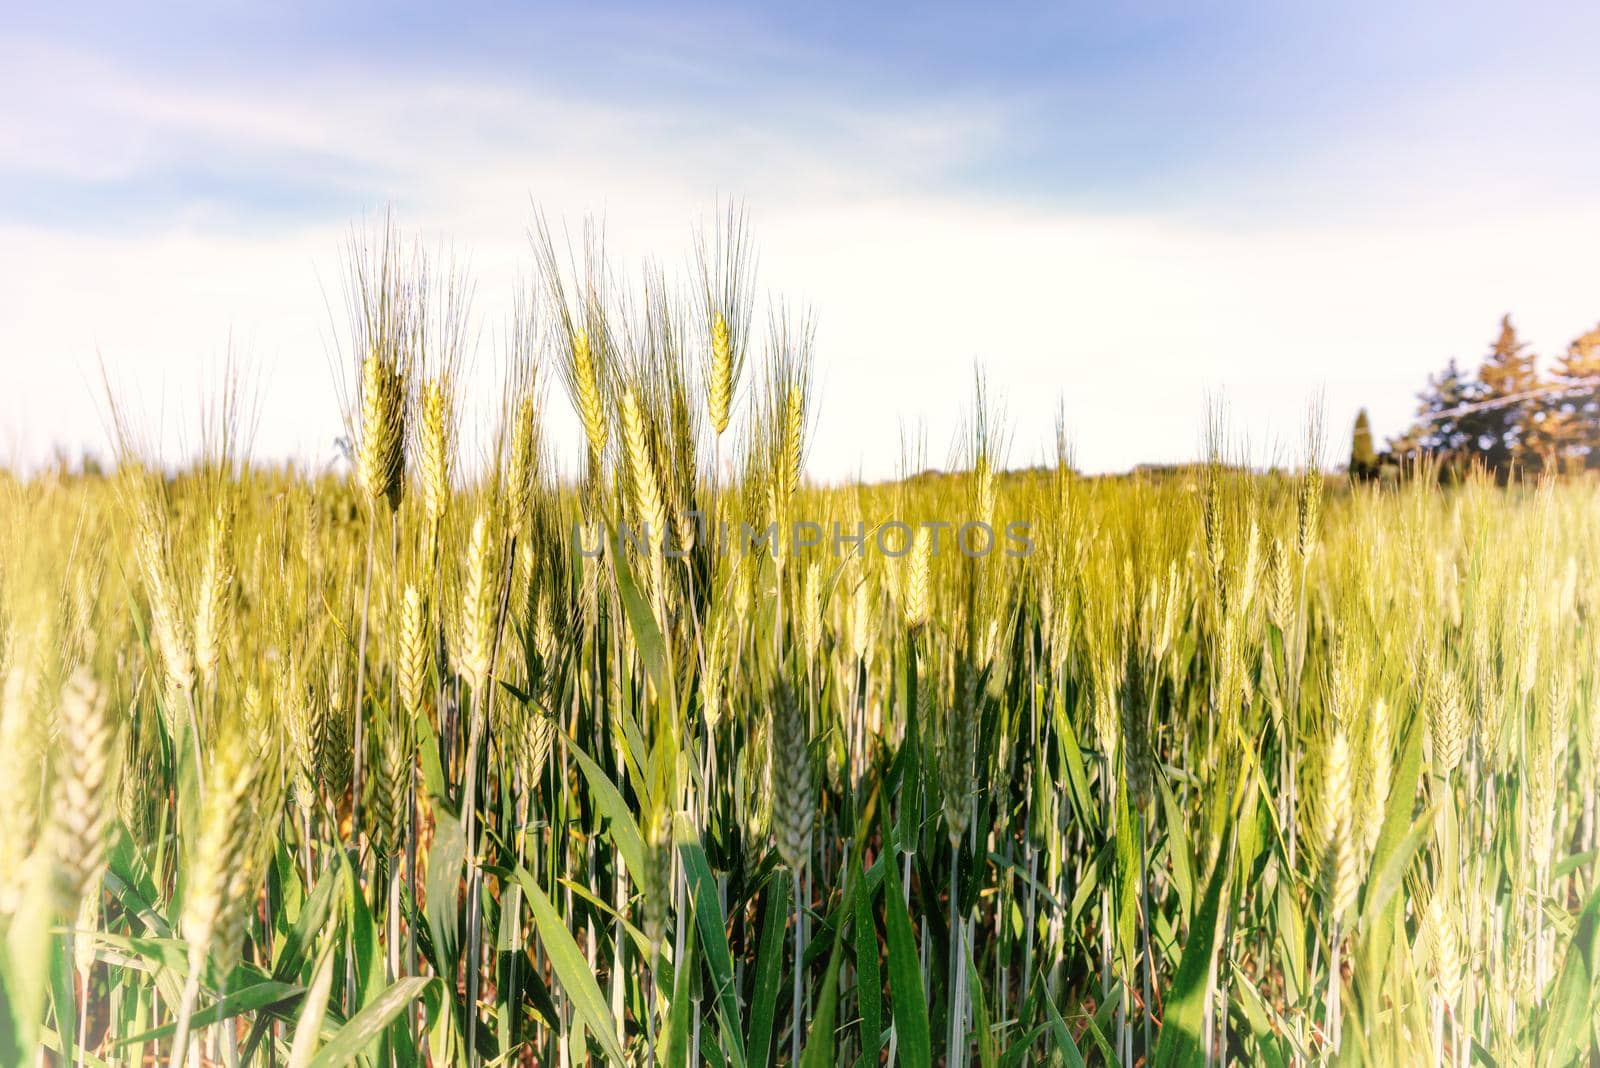 Field of wheat in Italy, near Pesaro and Urbino by MaxalTamor